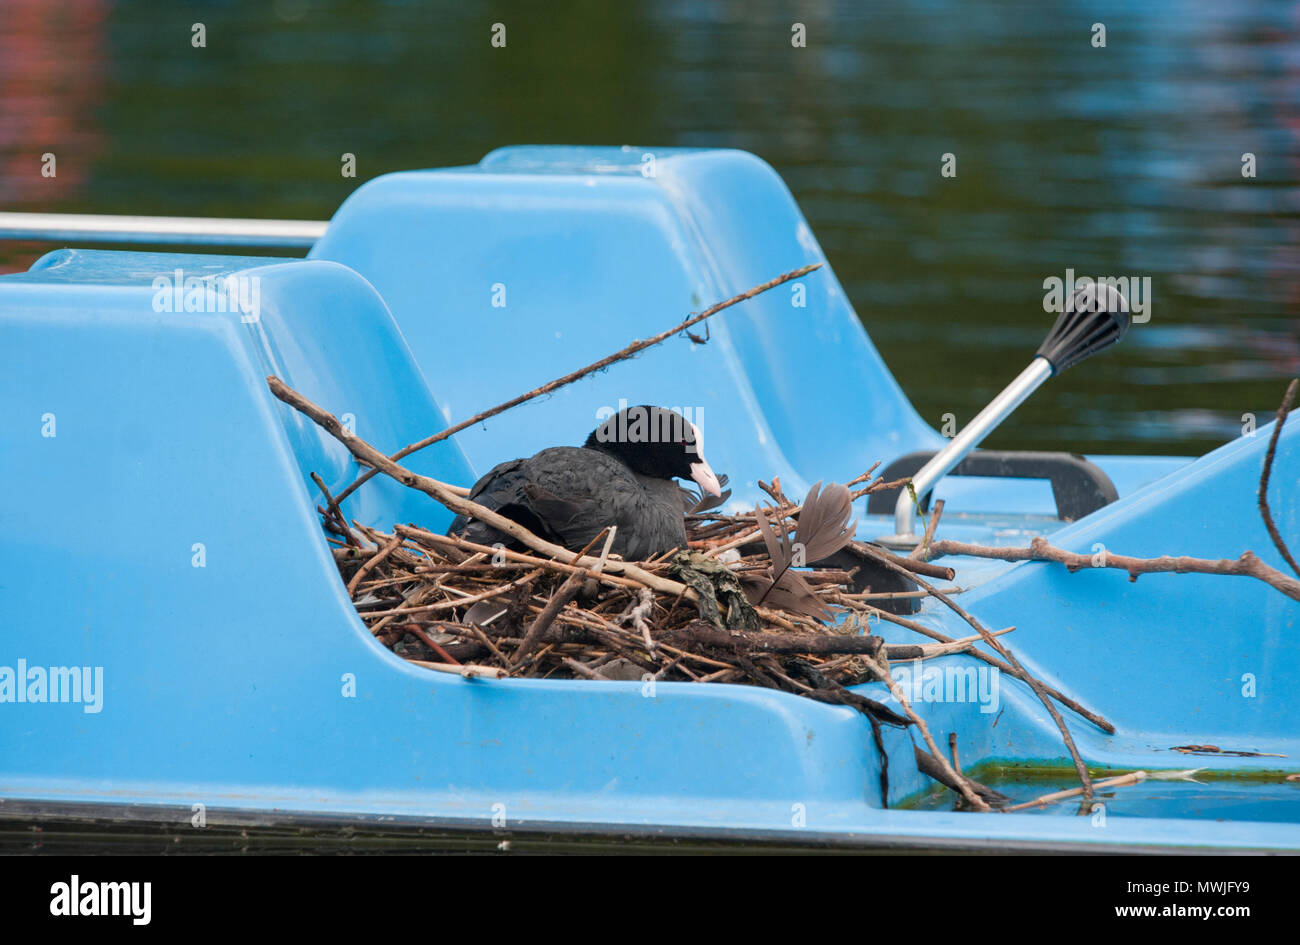 Eurasischen Blässhuhn (Fulica atra), auch bekannt als die Gemeinsame Blässhuhn oder Blässhuhn, am Nest auf einem Tretboot auf dem Regents Park, London, Vereinigtes Königreich Stockfoto